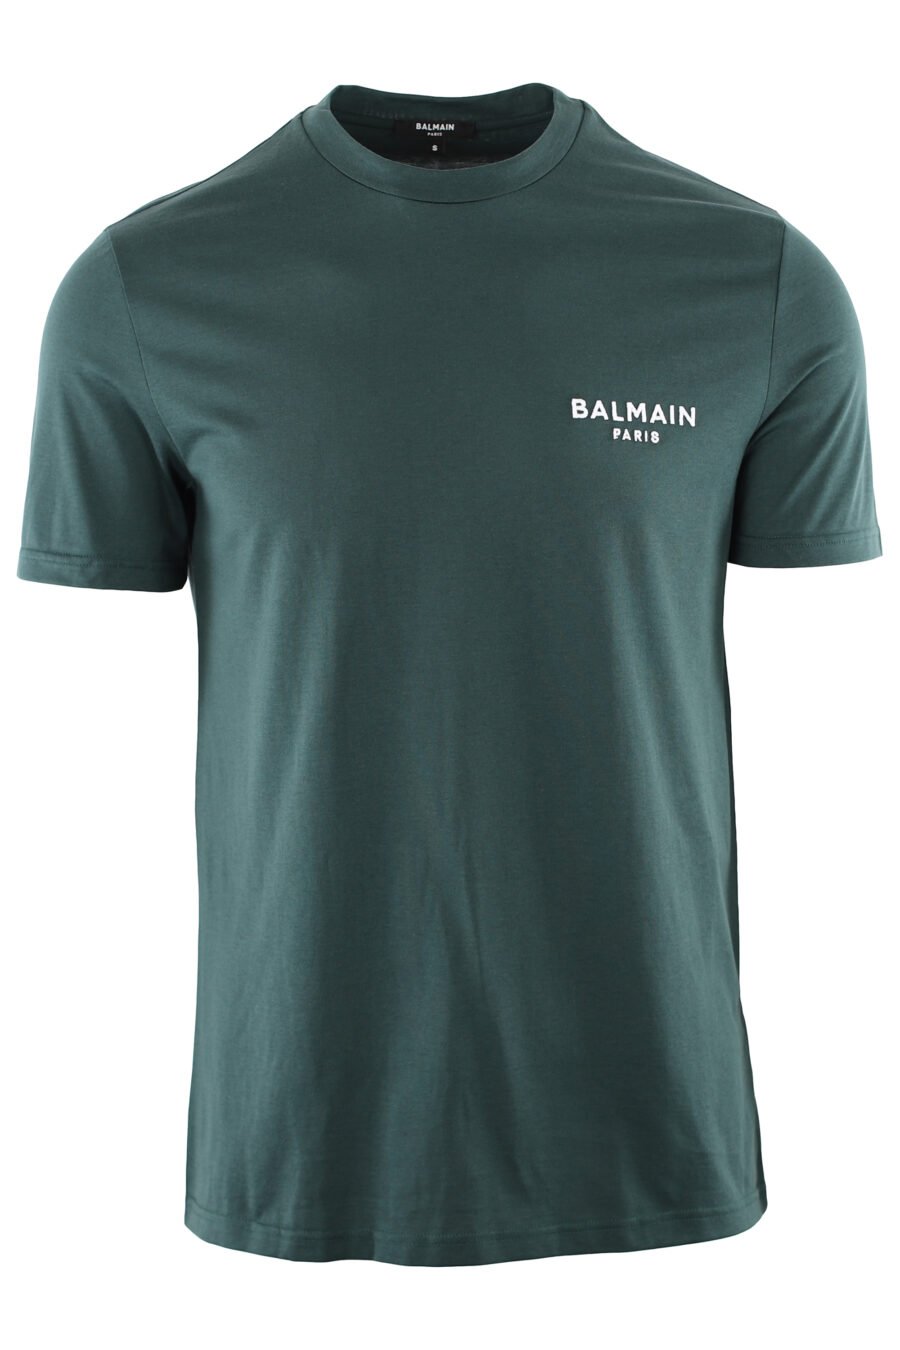 Camiseta verde oscura con logo blanco bordado - IMG 7405